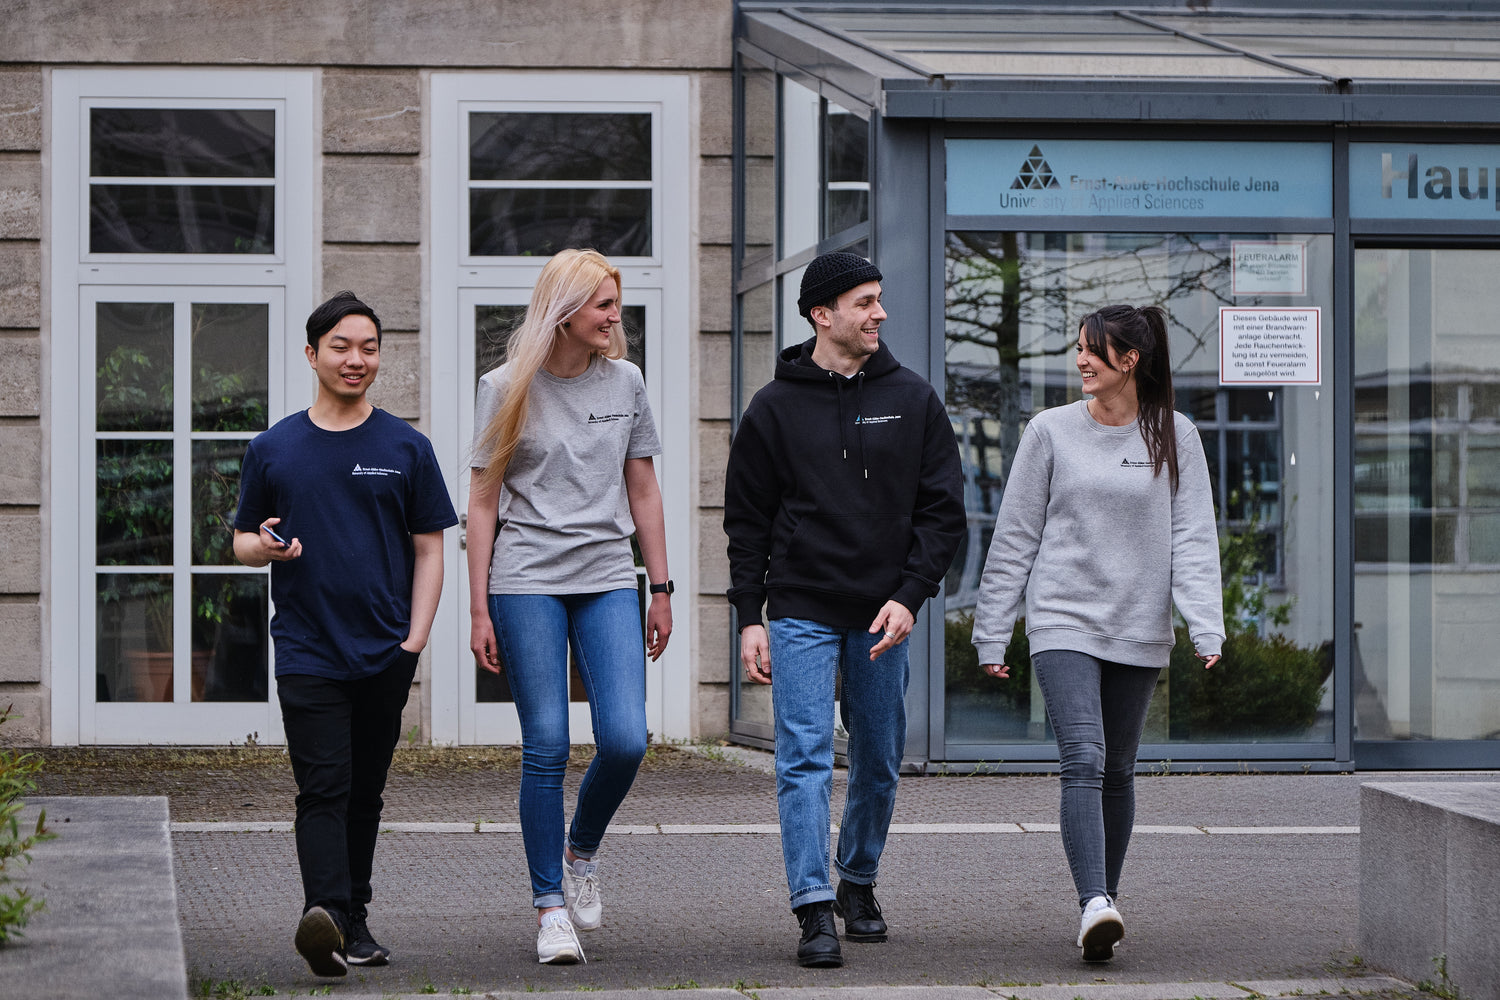 2 Studenten und 2 Studentinnen laufen auf die Kamera zu und unterhalten sich. Sie tragen Kleidung von StudyMerch, die mit dem Logo der Ernst-Abbe-Hochschule veredelt ist: v.l.n.r. dunkelblaues und graues T-Shirt, schwarzer Hoodie und grauer Sweater.